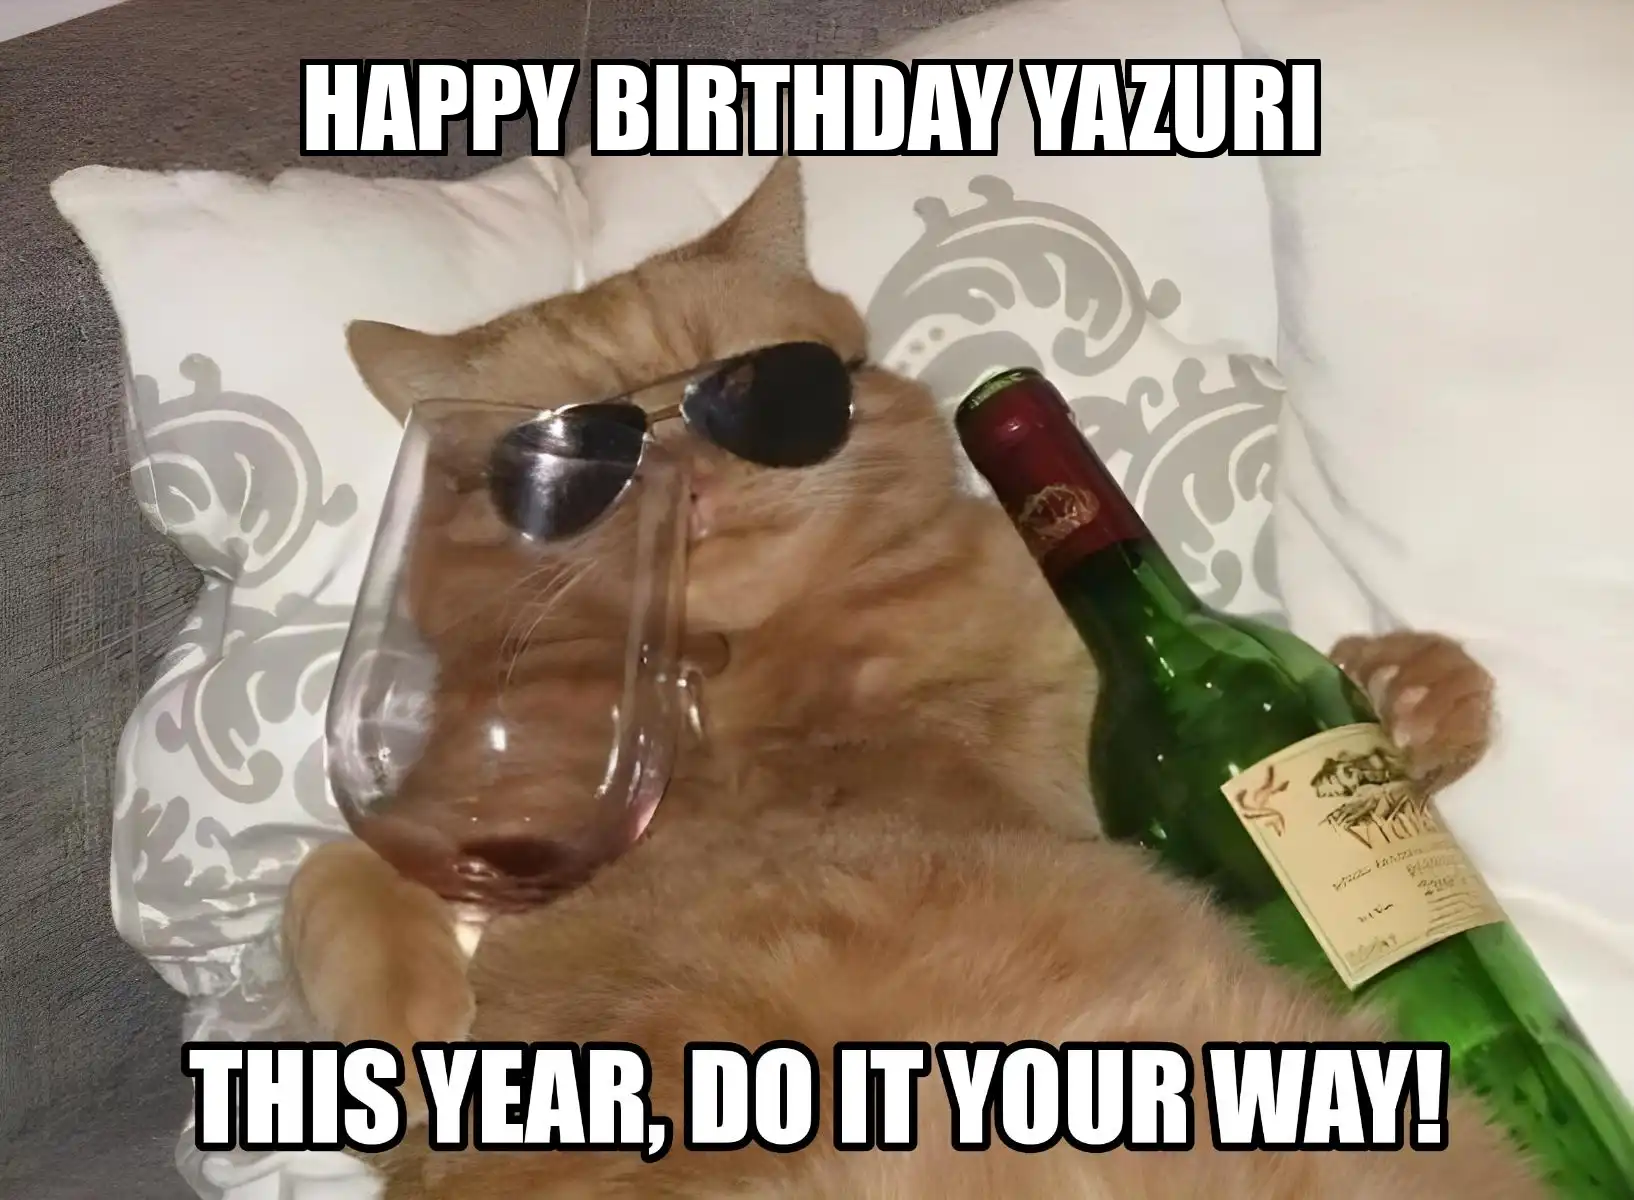 Happy Birthday Yazuri This Year Do It Your Way Meme